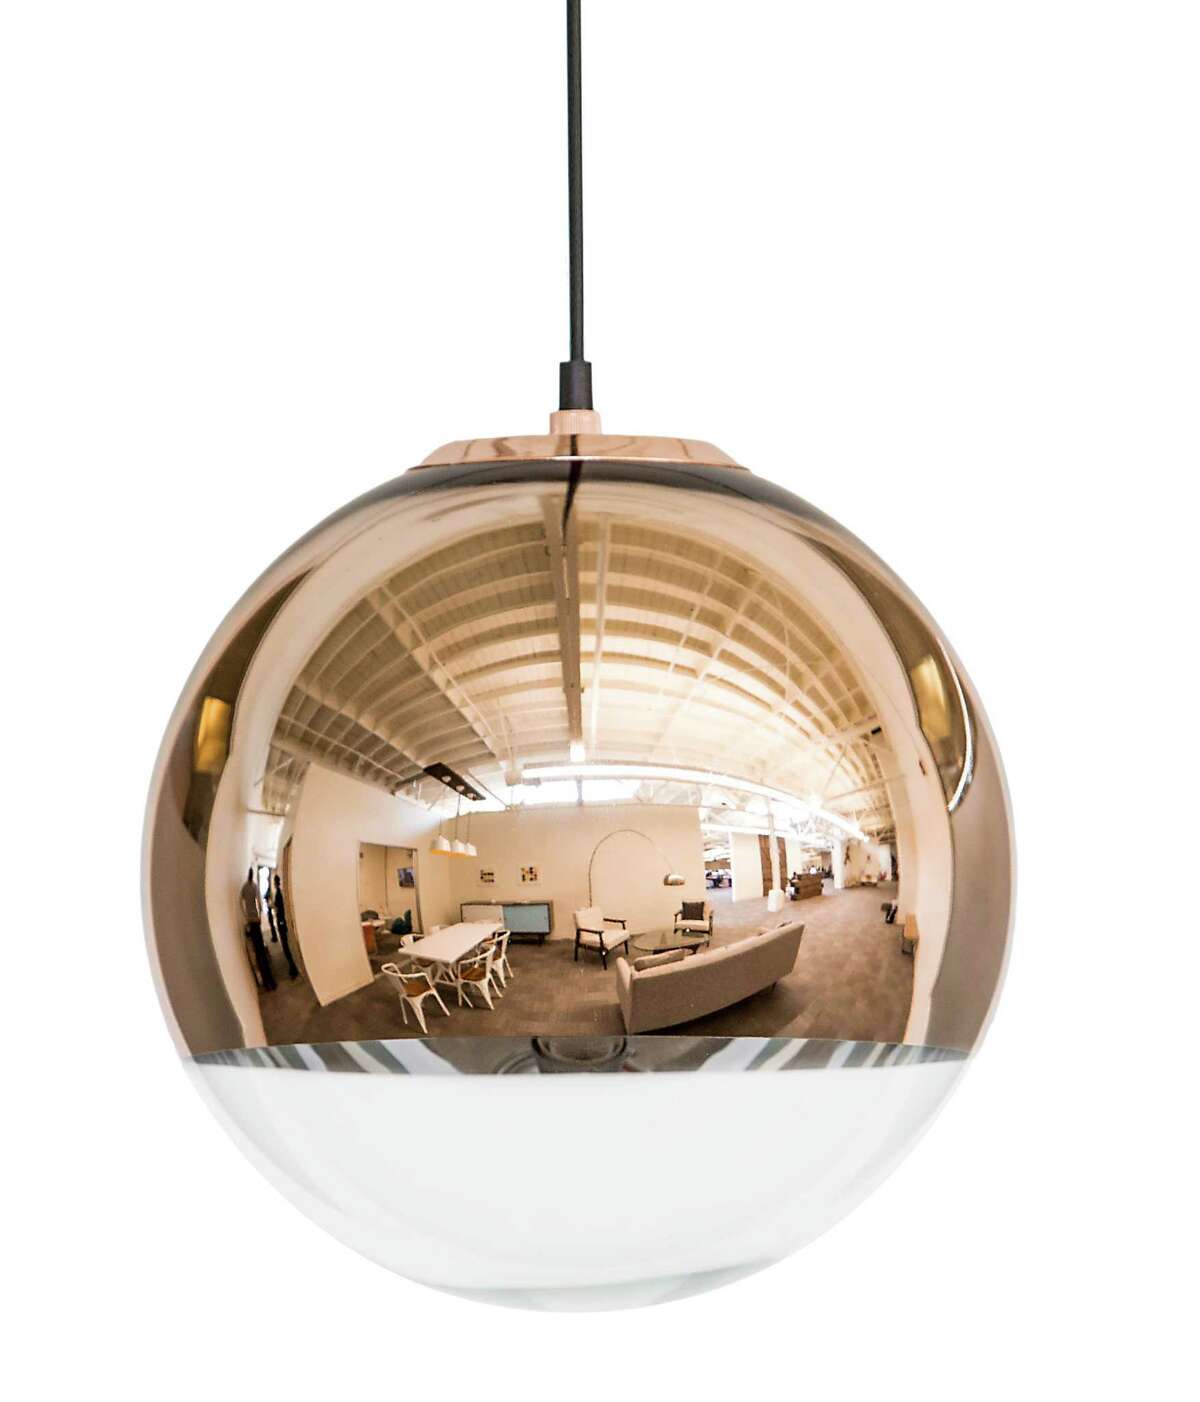 Dot & Bo's Sphere Pendant Lamp in copper ($378, dotandbo.com).